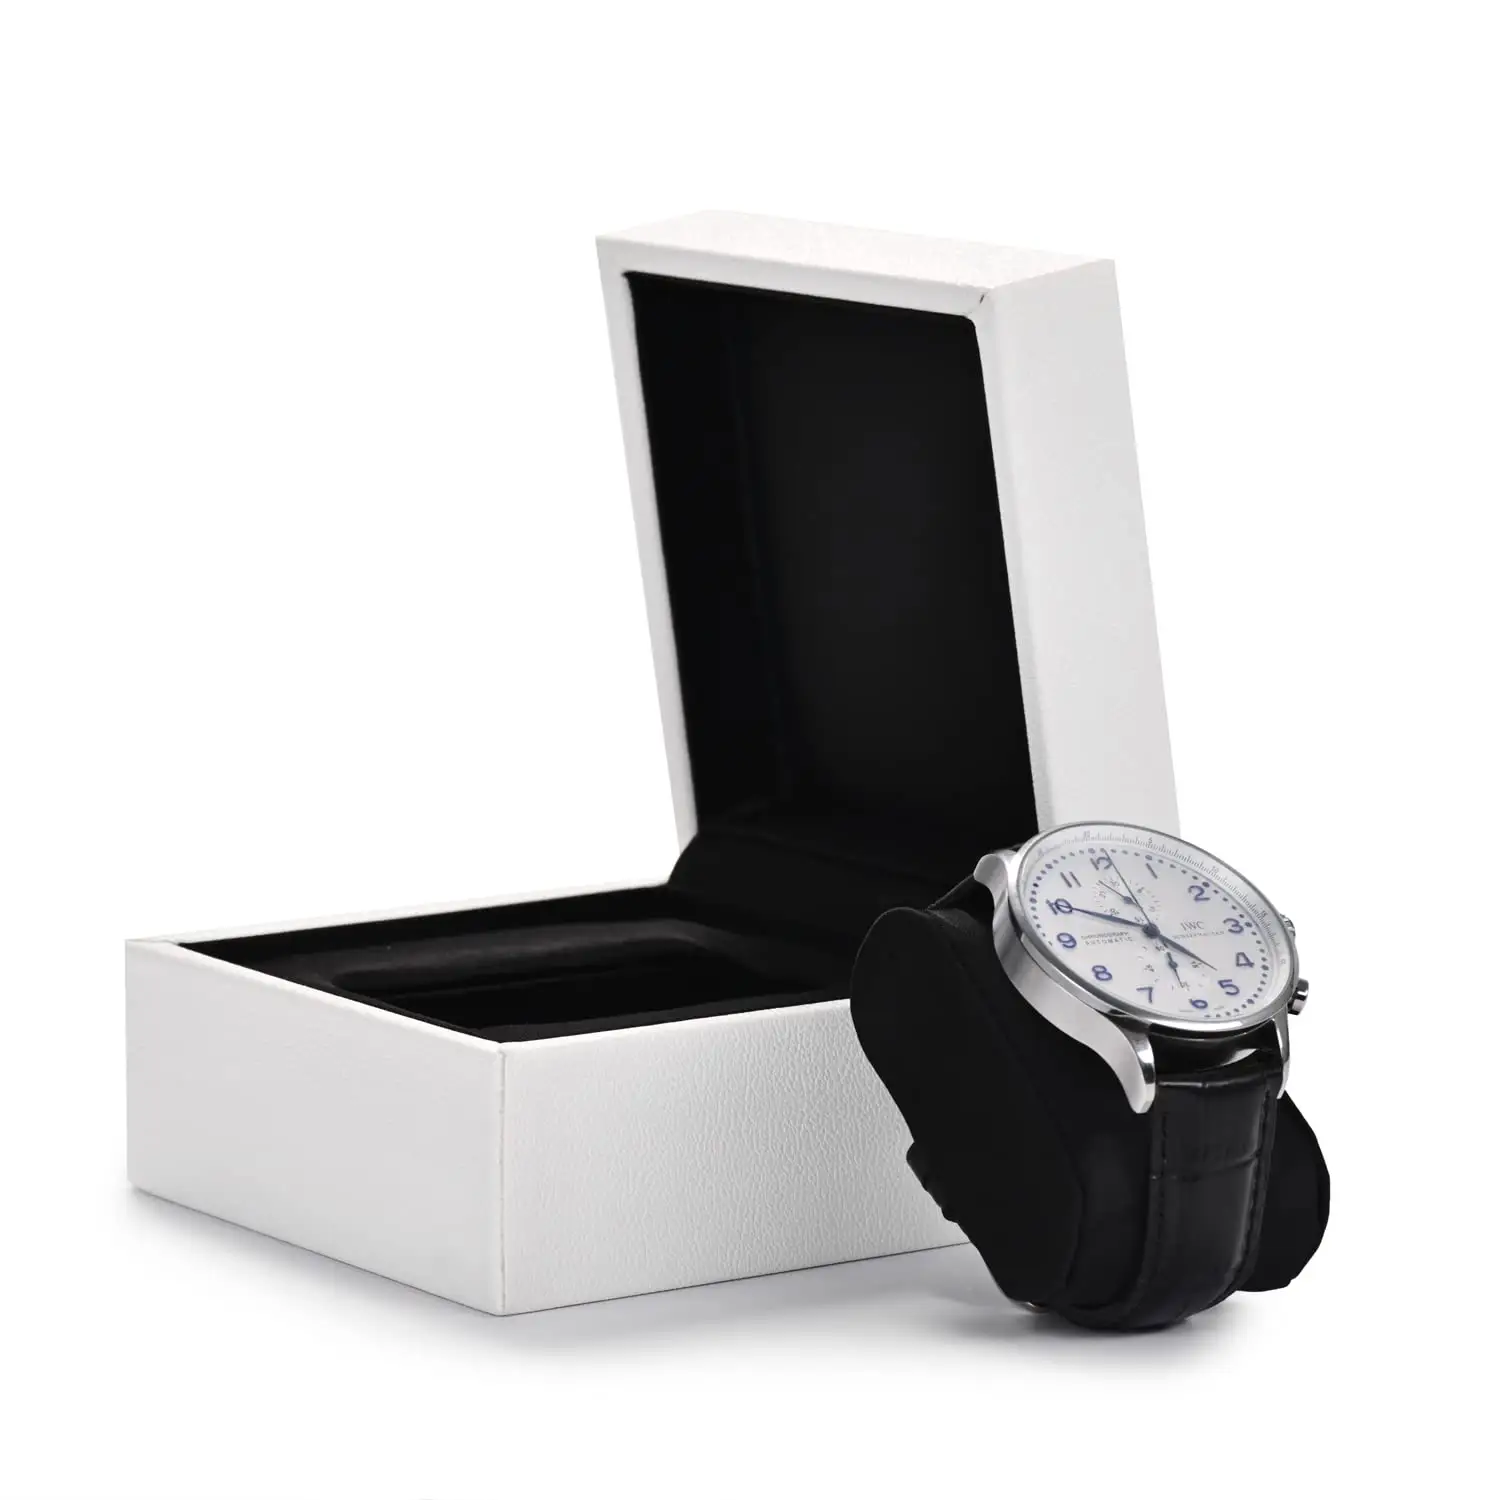 กล่องใส่นาฬิกาสำหรับผู้ชายและผู้หญิงบรรจุภัณฑ์กระดาษหรูหราพิมพ์โลโก้แบรนด์ตามสั่ง